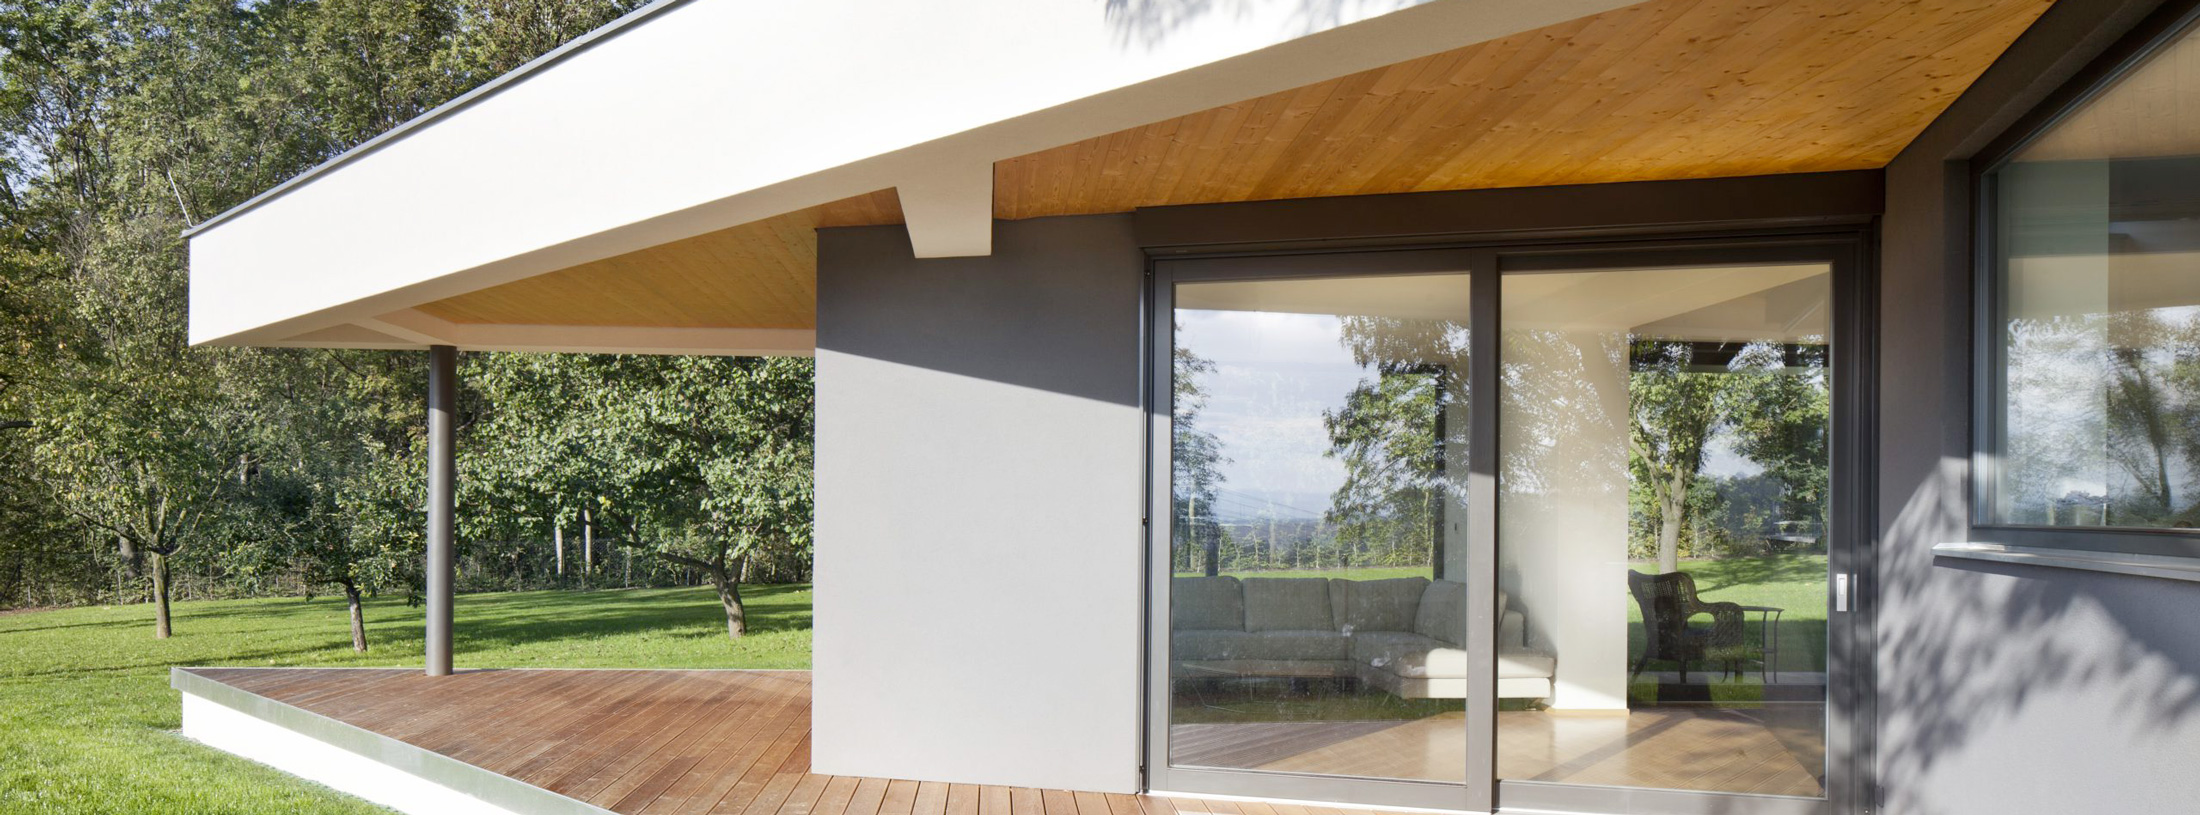 Vue exterieure extension piece à vivre avec baies vitrées | BO Archi Concept valorise votre patrimoine sur Tours ou en Indre-et-Loire